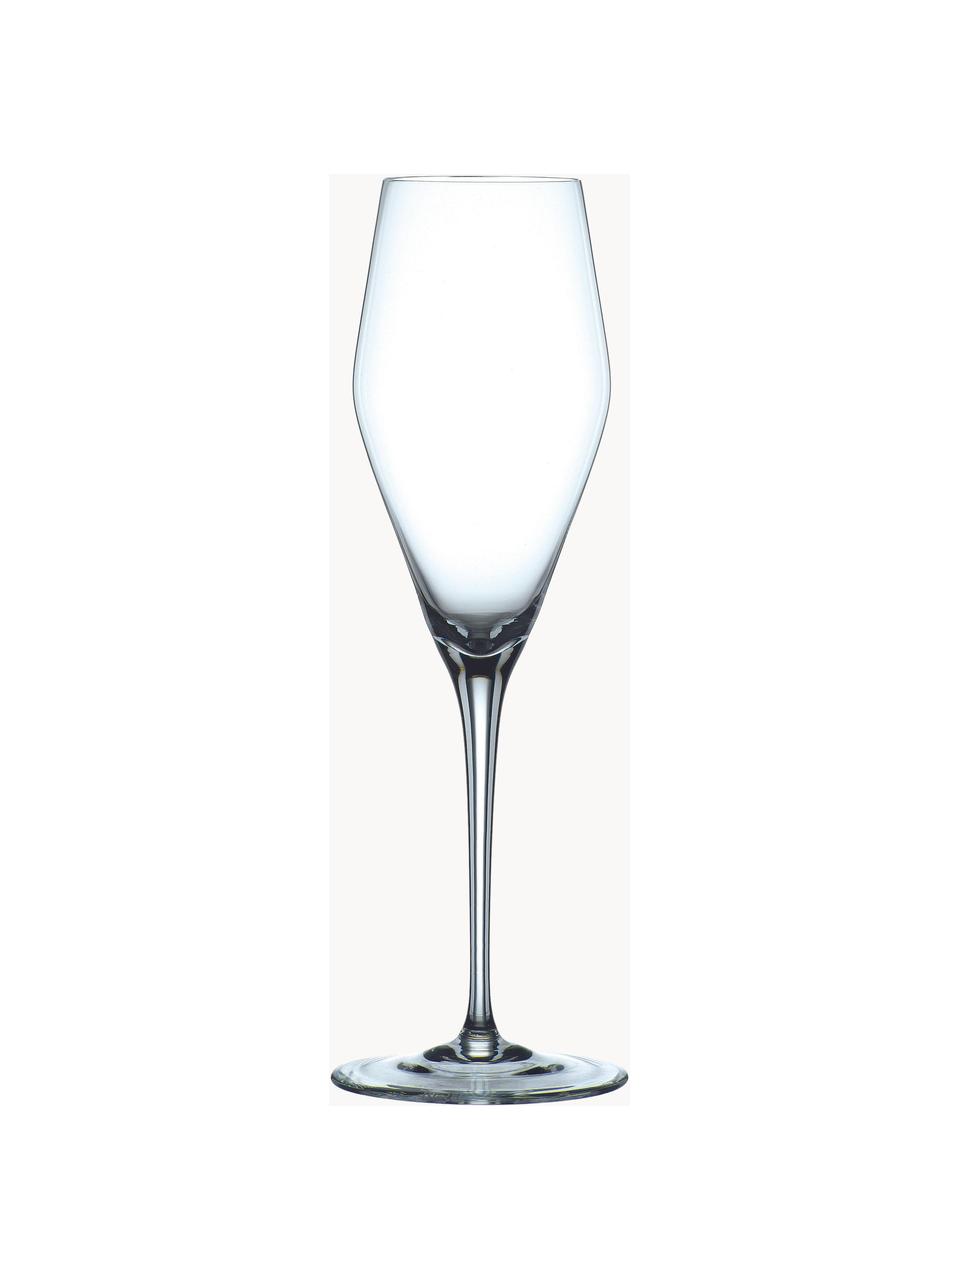 Kristall-Sektgläser ViNova, 4 Stück, Kristallglas, Transparent, Ø 7 x H 24 cm, 280 ml